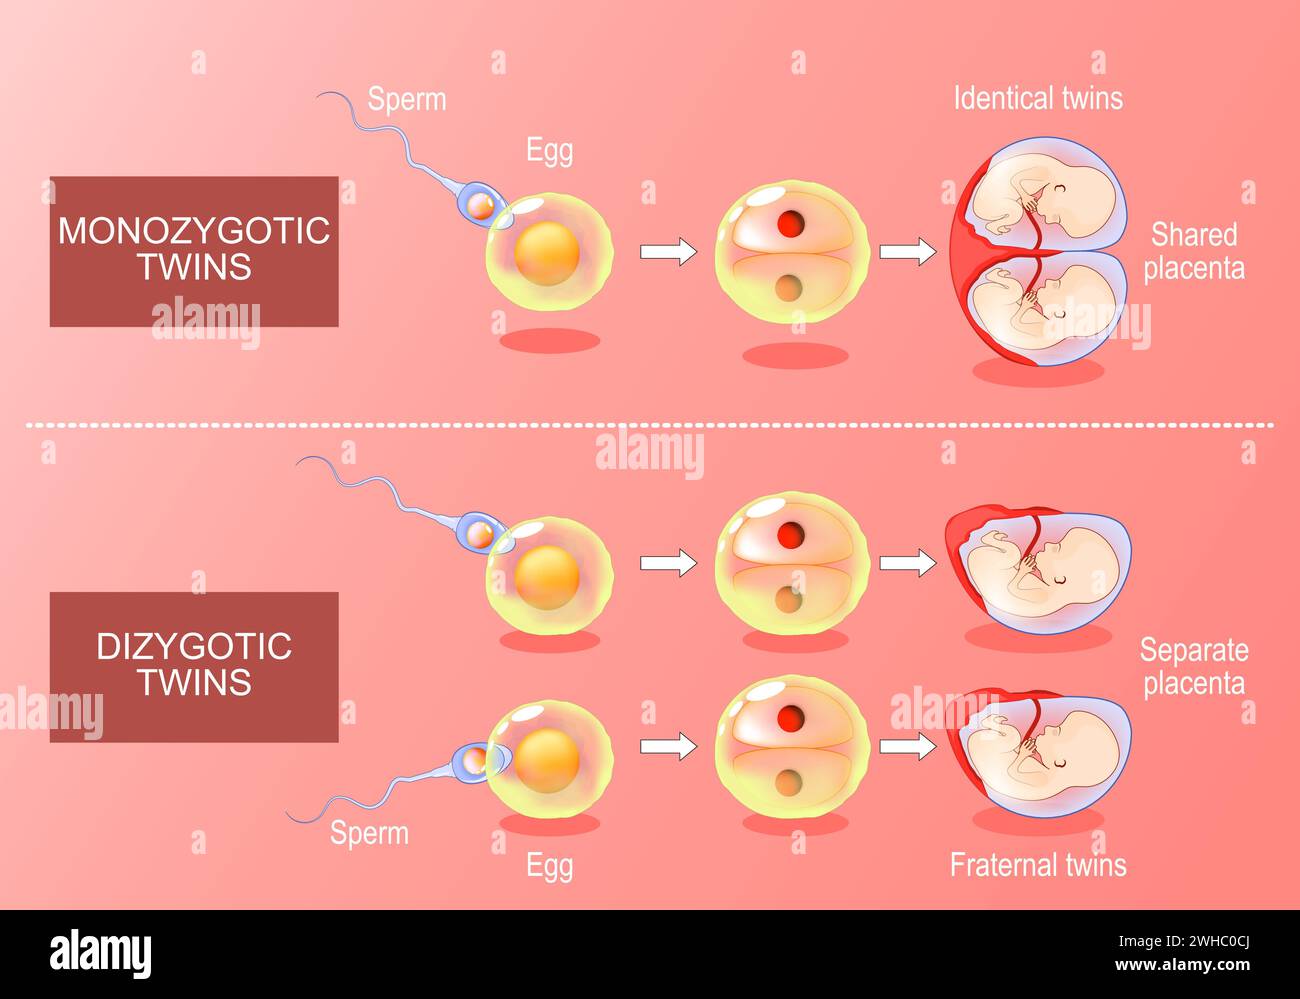 Sviluppo di Zygote in gemelli monozigotici e dizigotici. Dalla fecondazione, l'uovo e lo sperma alla formazione di sacchi amniotici. Vettore isometrico. Illustrazione piatta Illustrazione Vettoriale